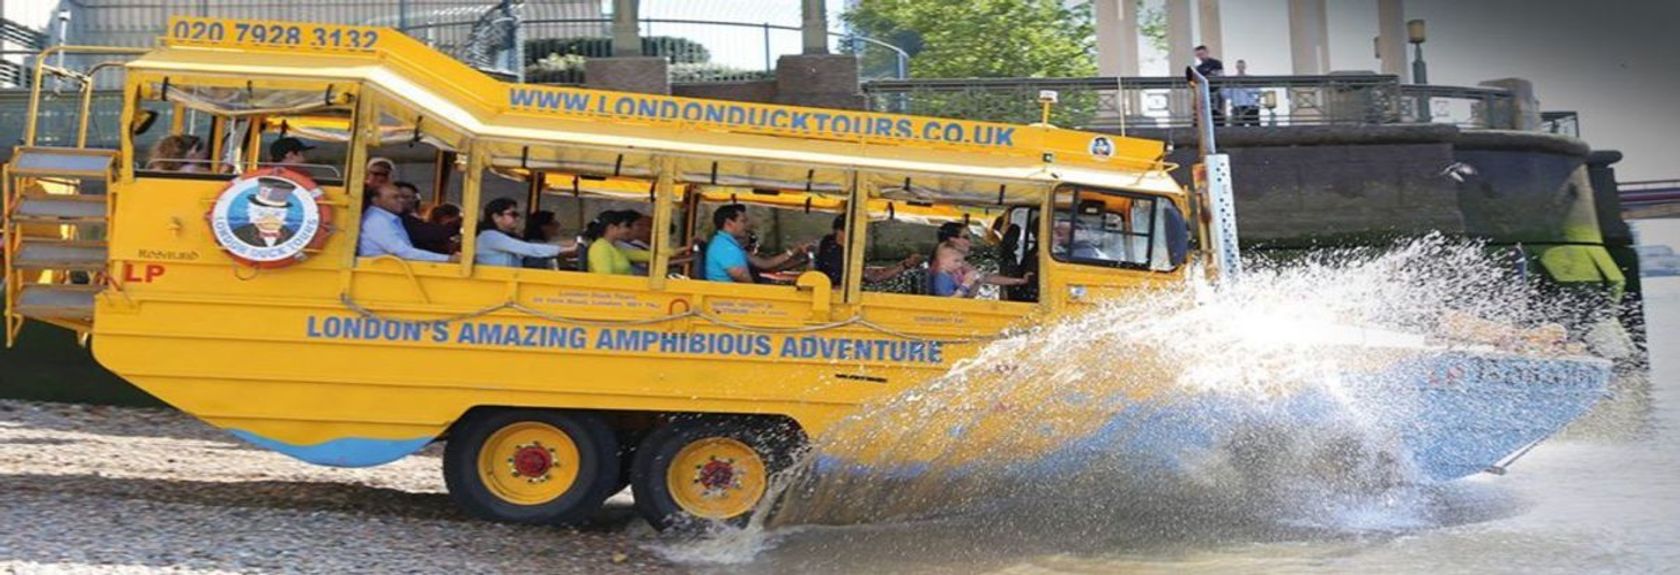 Explore as ruas de Londres em um ônibus amarelo e veja os lugares mais famosos da capital, incluindo o Buckingham Palace e Downing Street. O ônibus então se transforma em um barco e leva você a uma aventura de 60 minutos no Tâmisa.